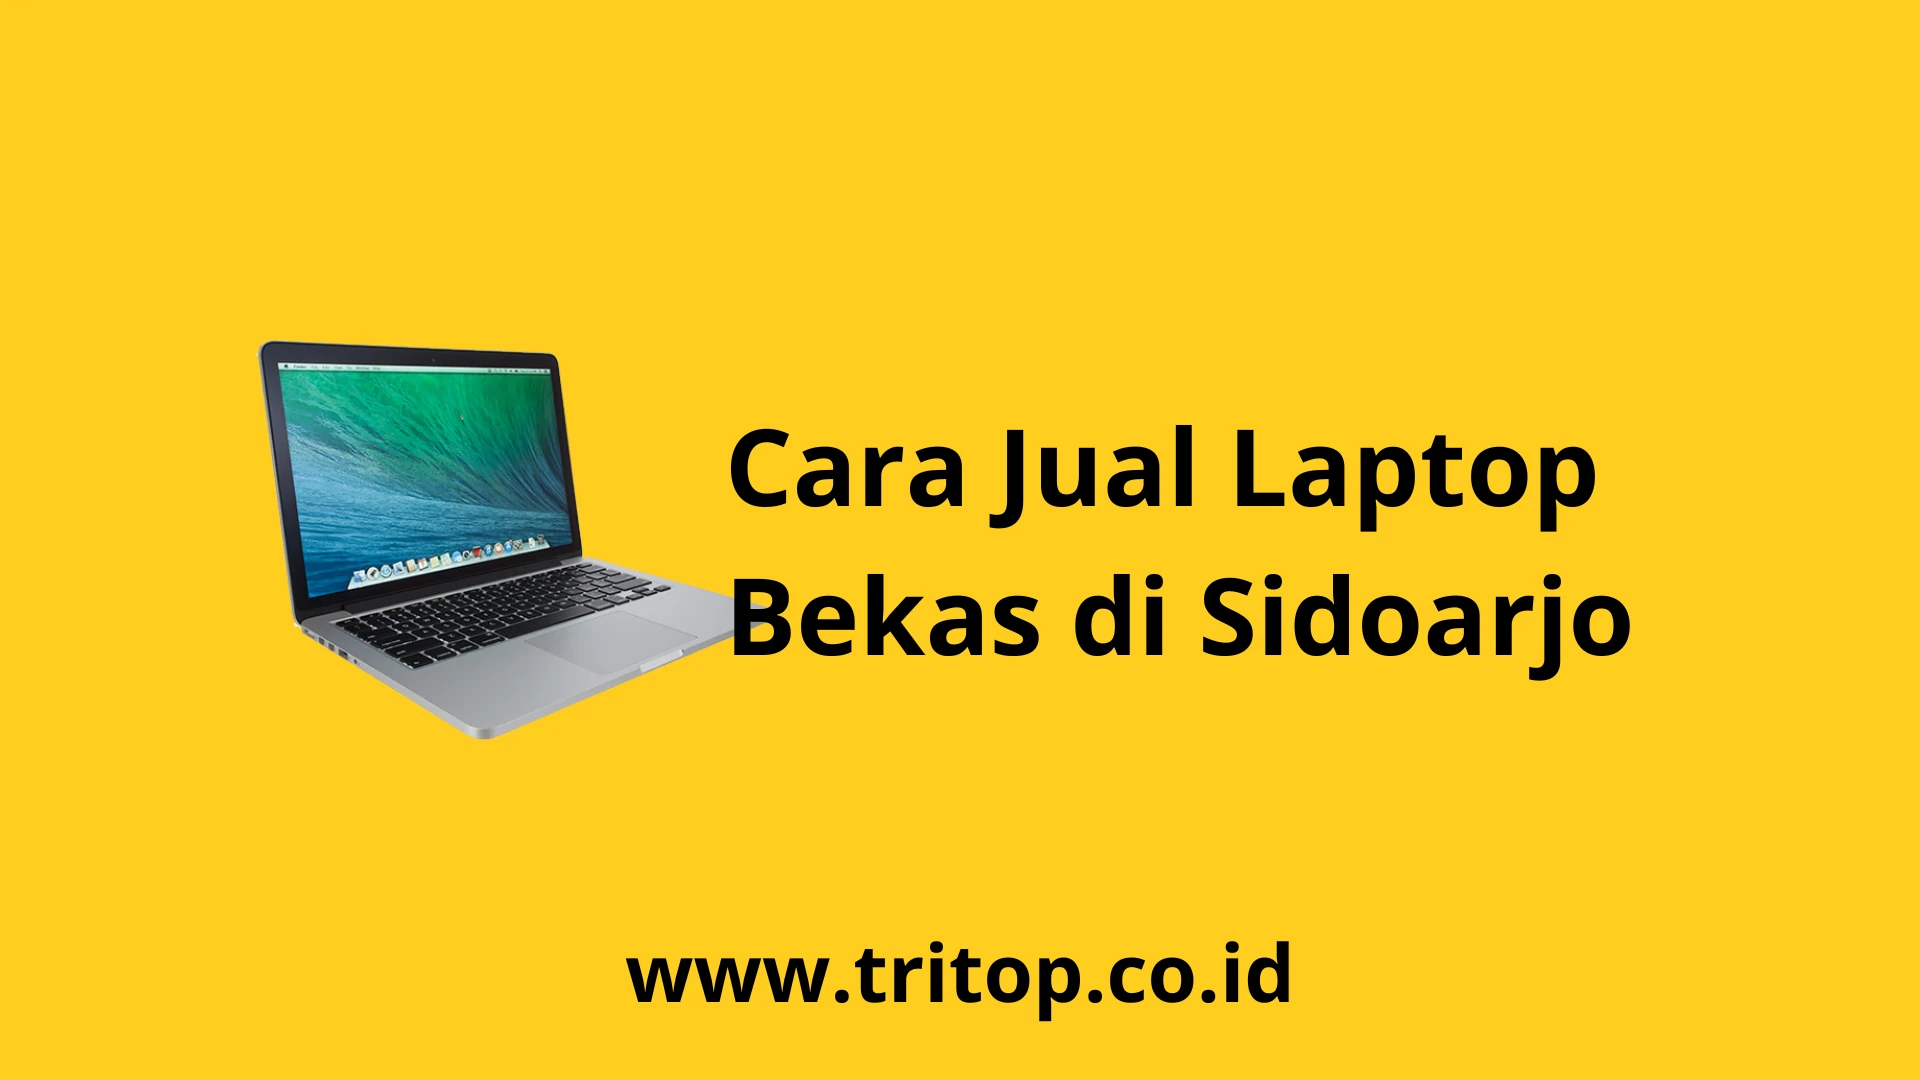 Jual Laptop Bekas Sidoarjo Tritop.co.id